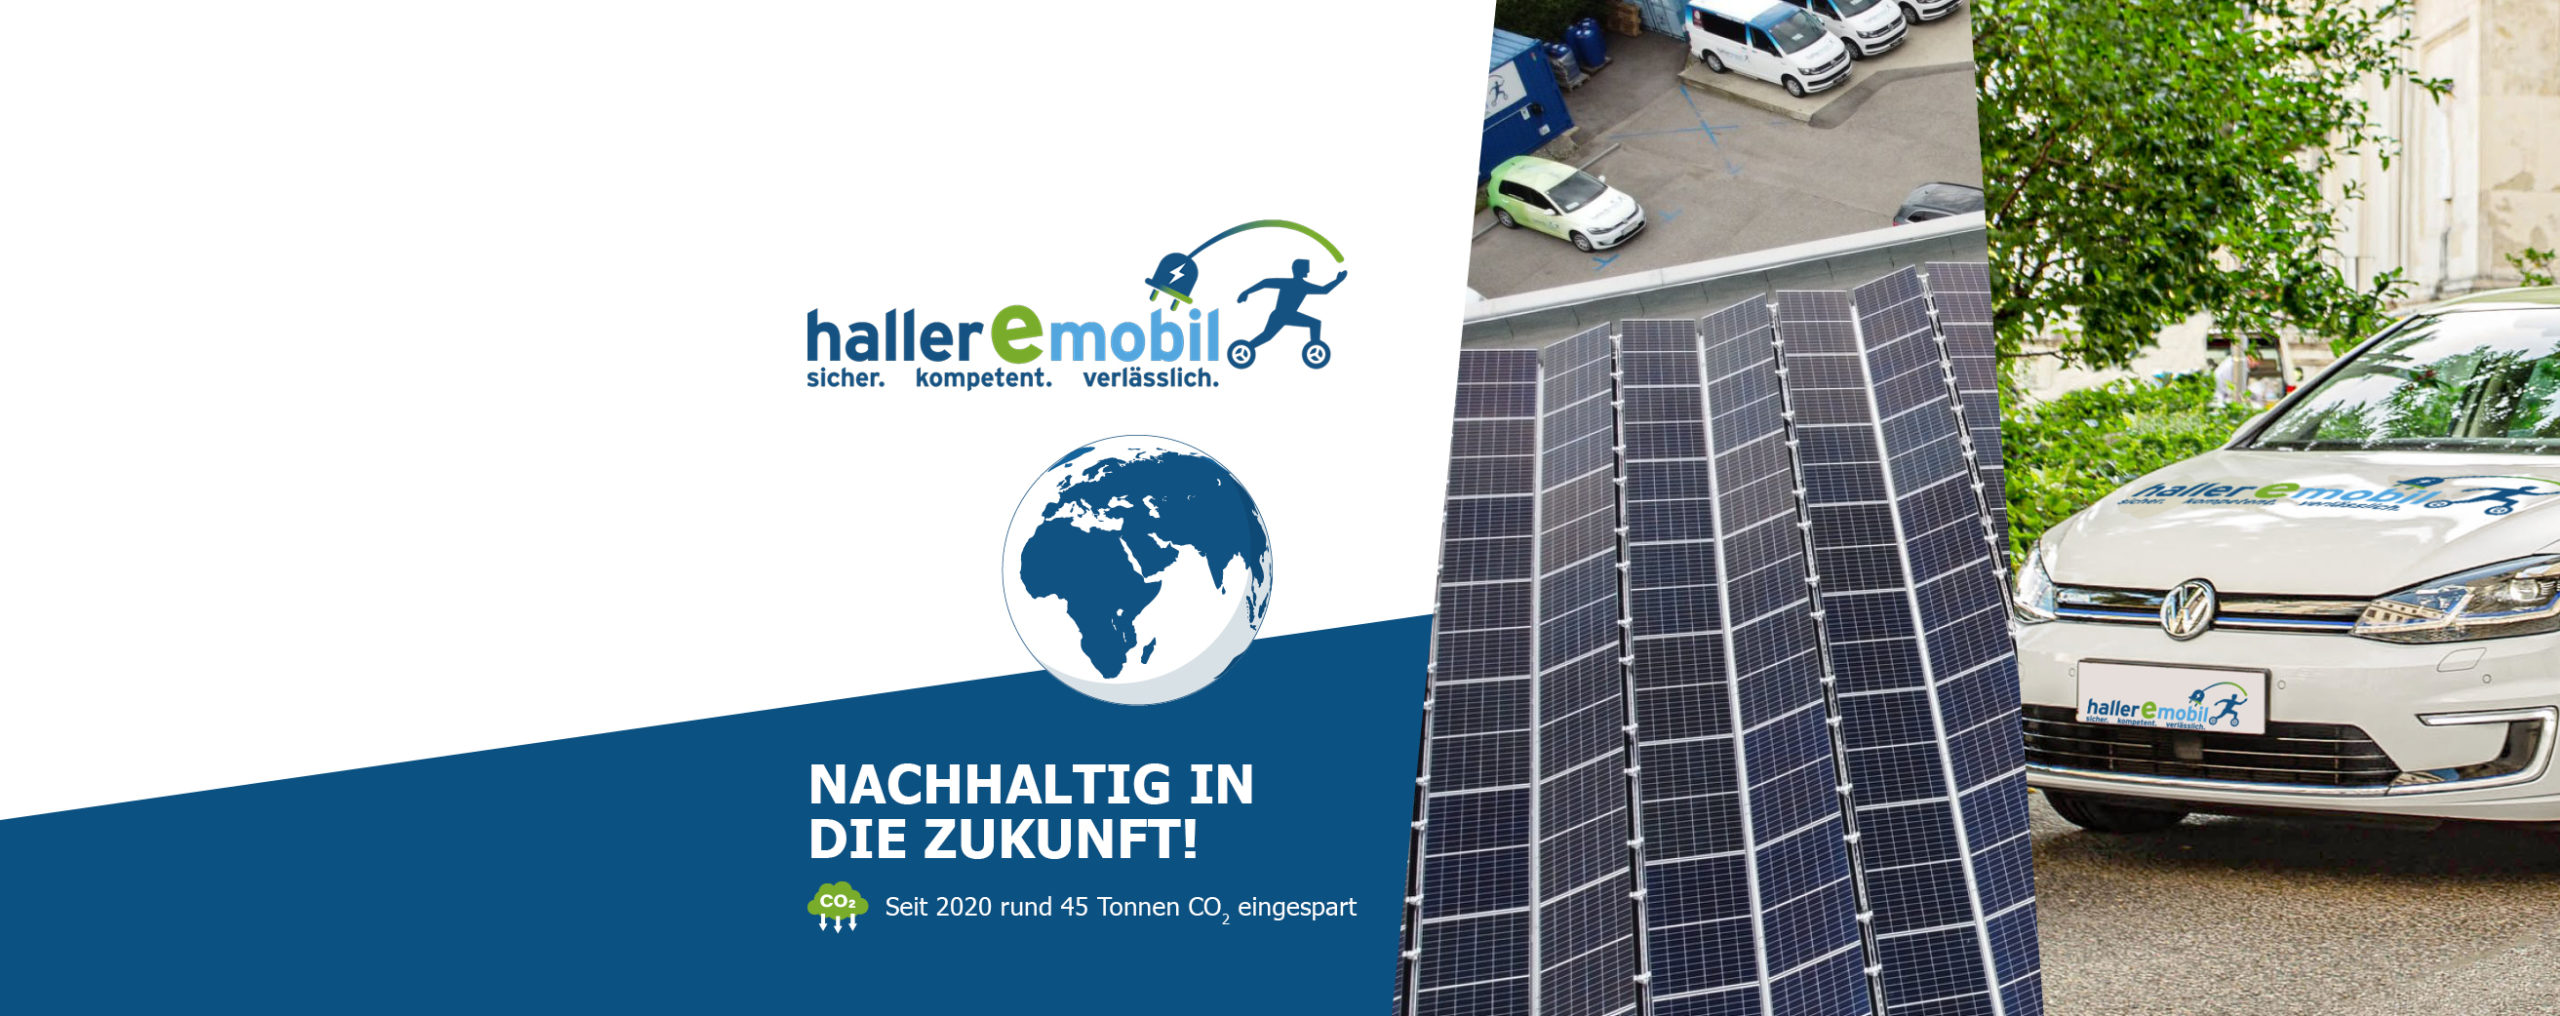 Nachhaltigkeit bei hallermobil, seit 2020 wurden rund 45 Tonnen CO2 durch die Photovoltaik Anlage eingespart